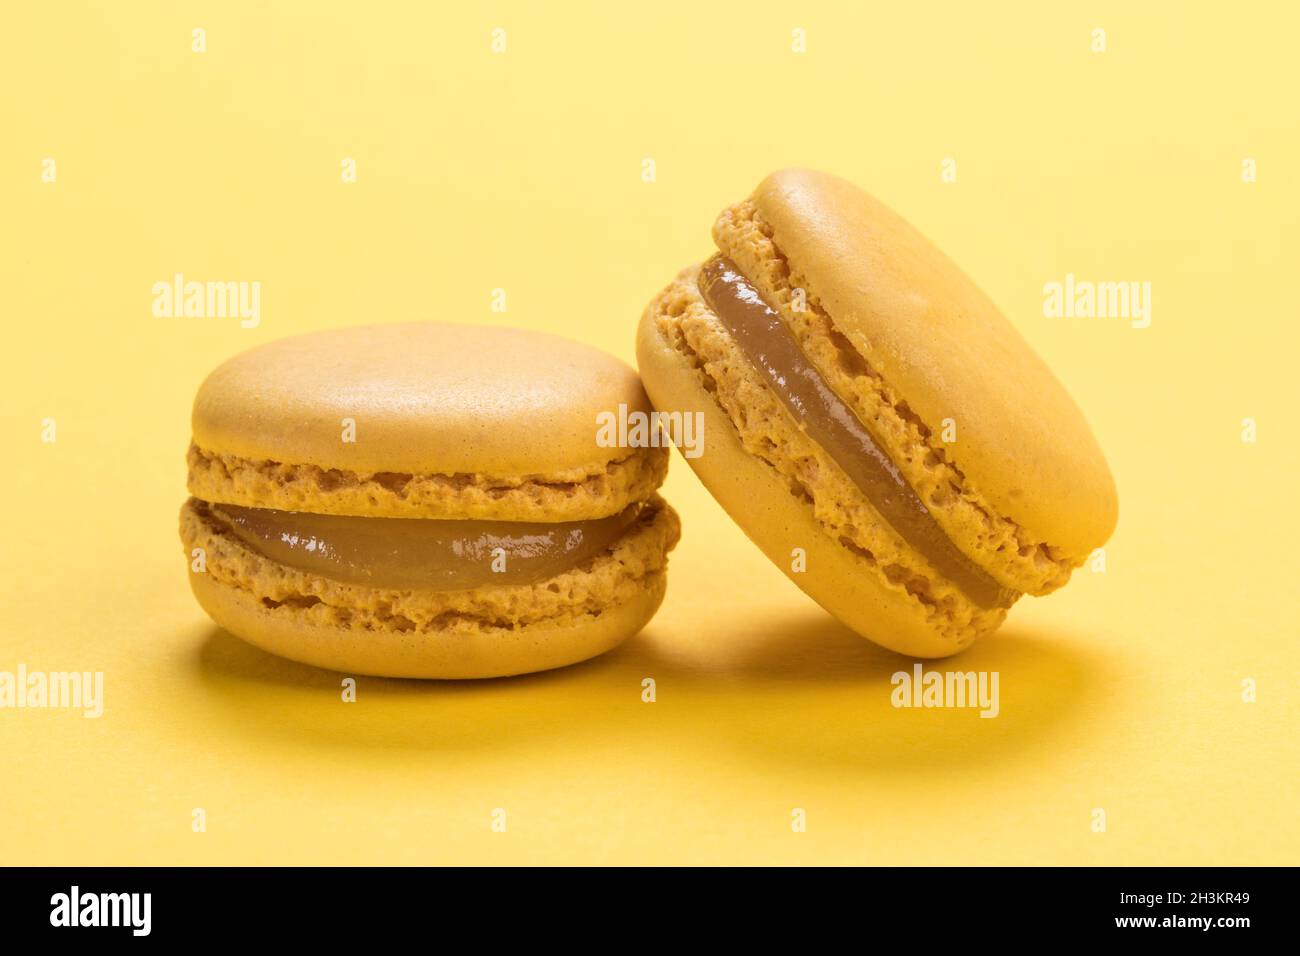 Les biscuits de macaron français au parfum de citron se ferment sur un fond de même couleur jaune pastel Banque D'Images